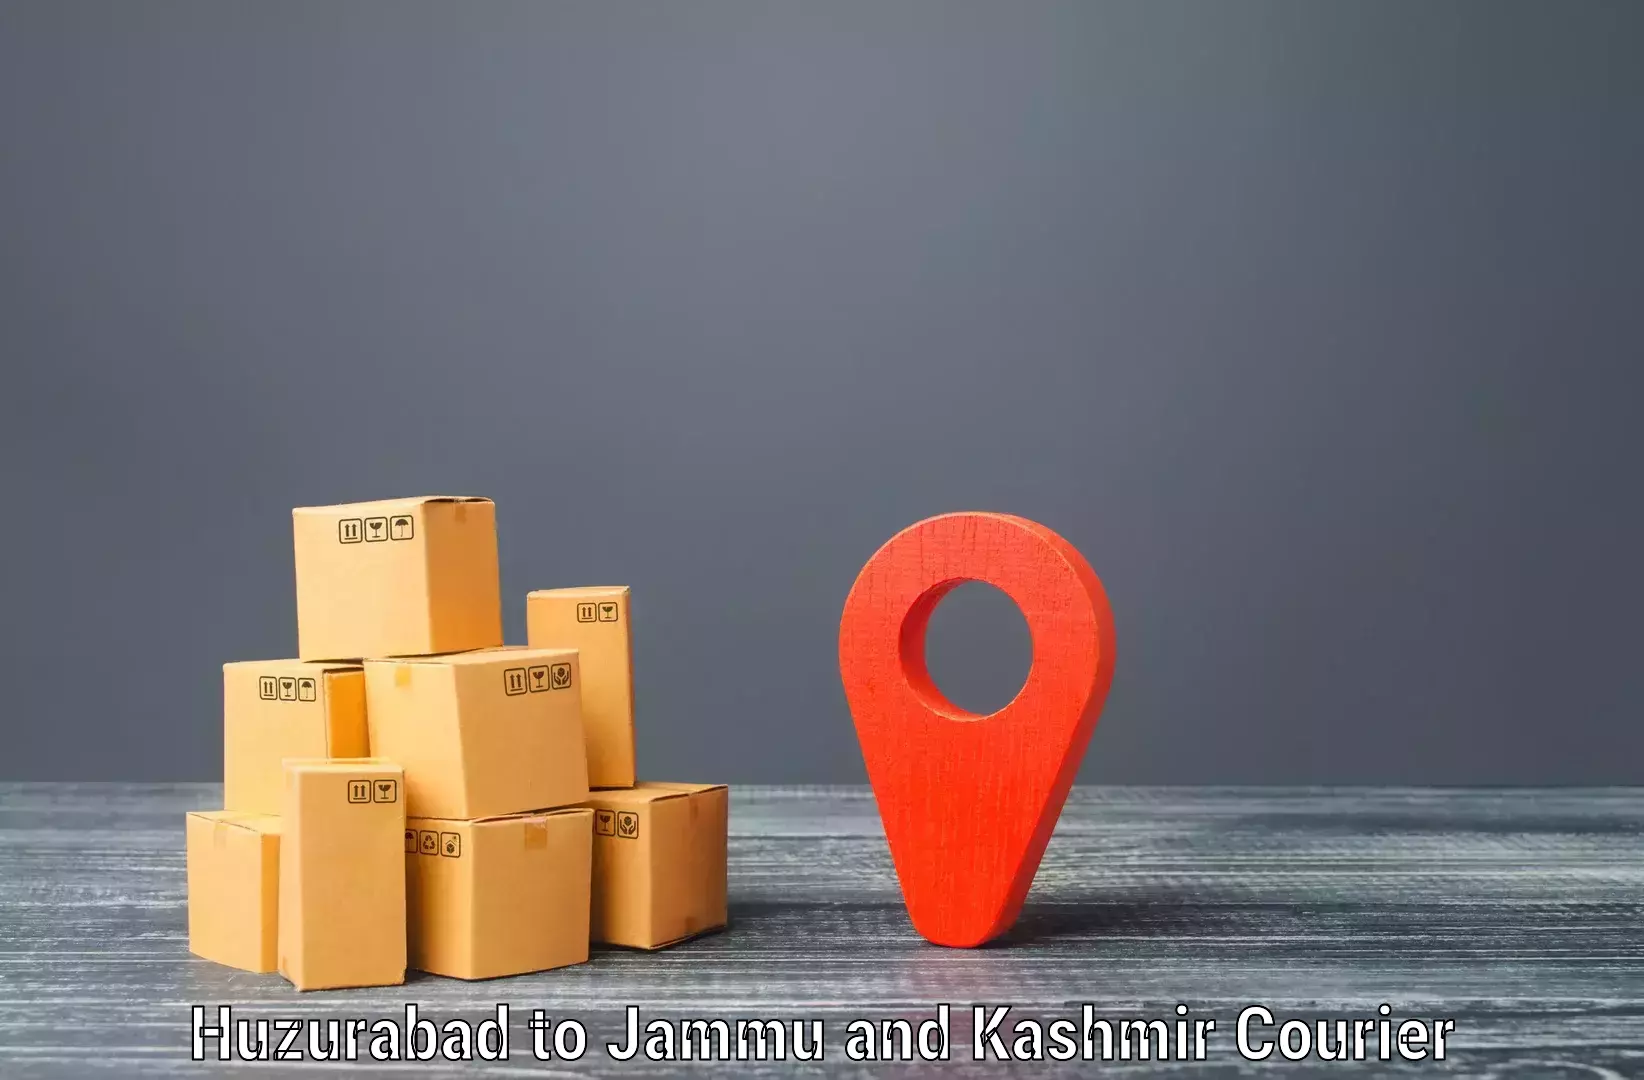 24-hour delivery options Huzurabad to Srinagar Kashmir